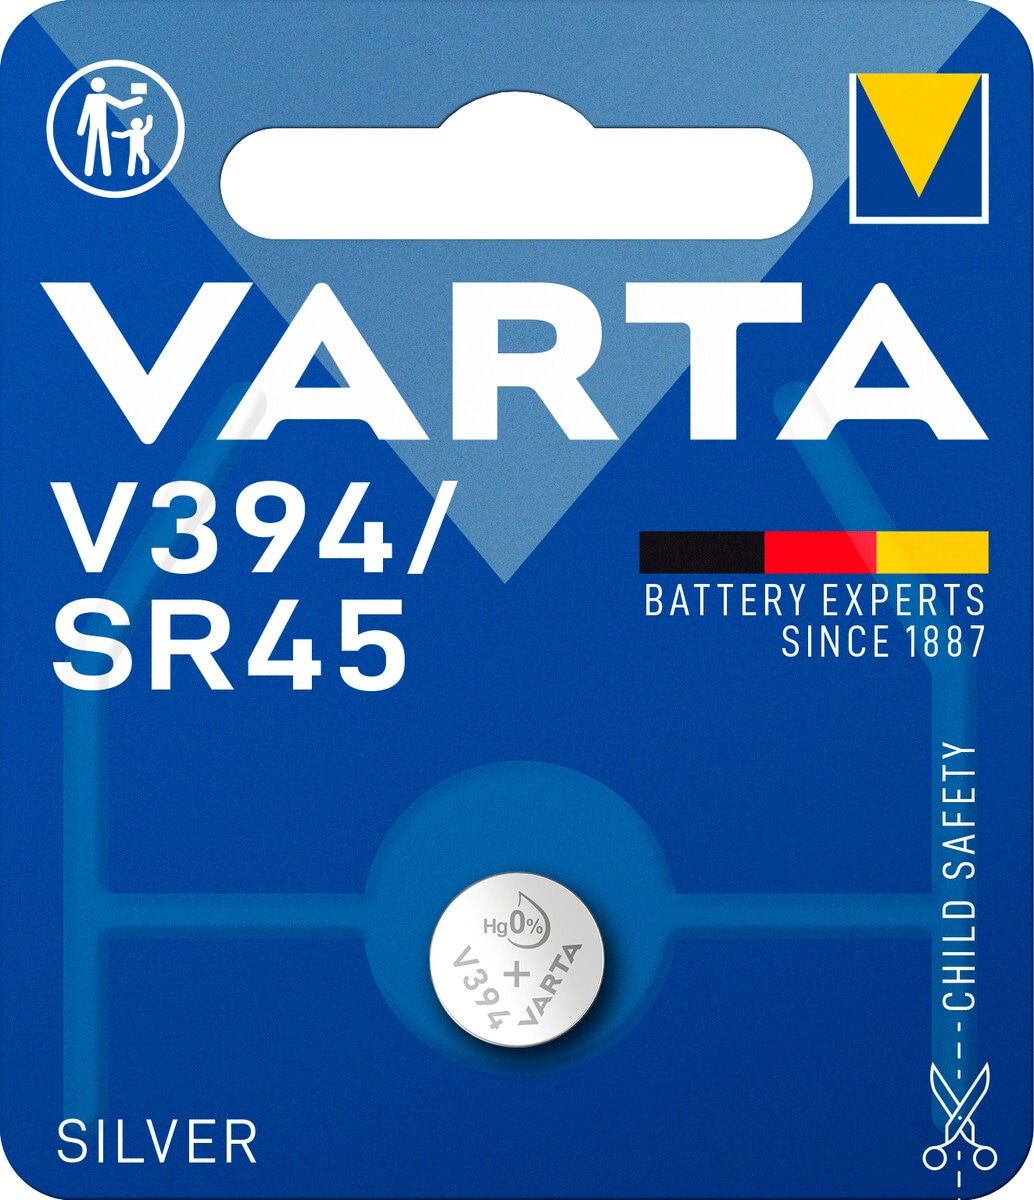 VARTA V394/SR45 knappcellebatteri